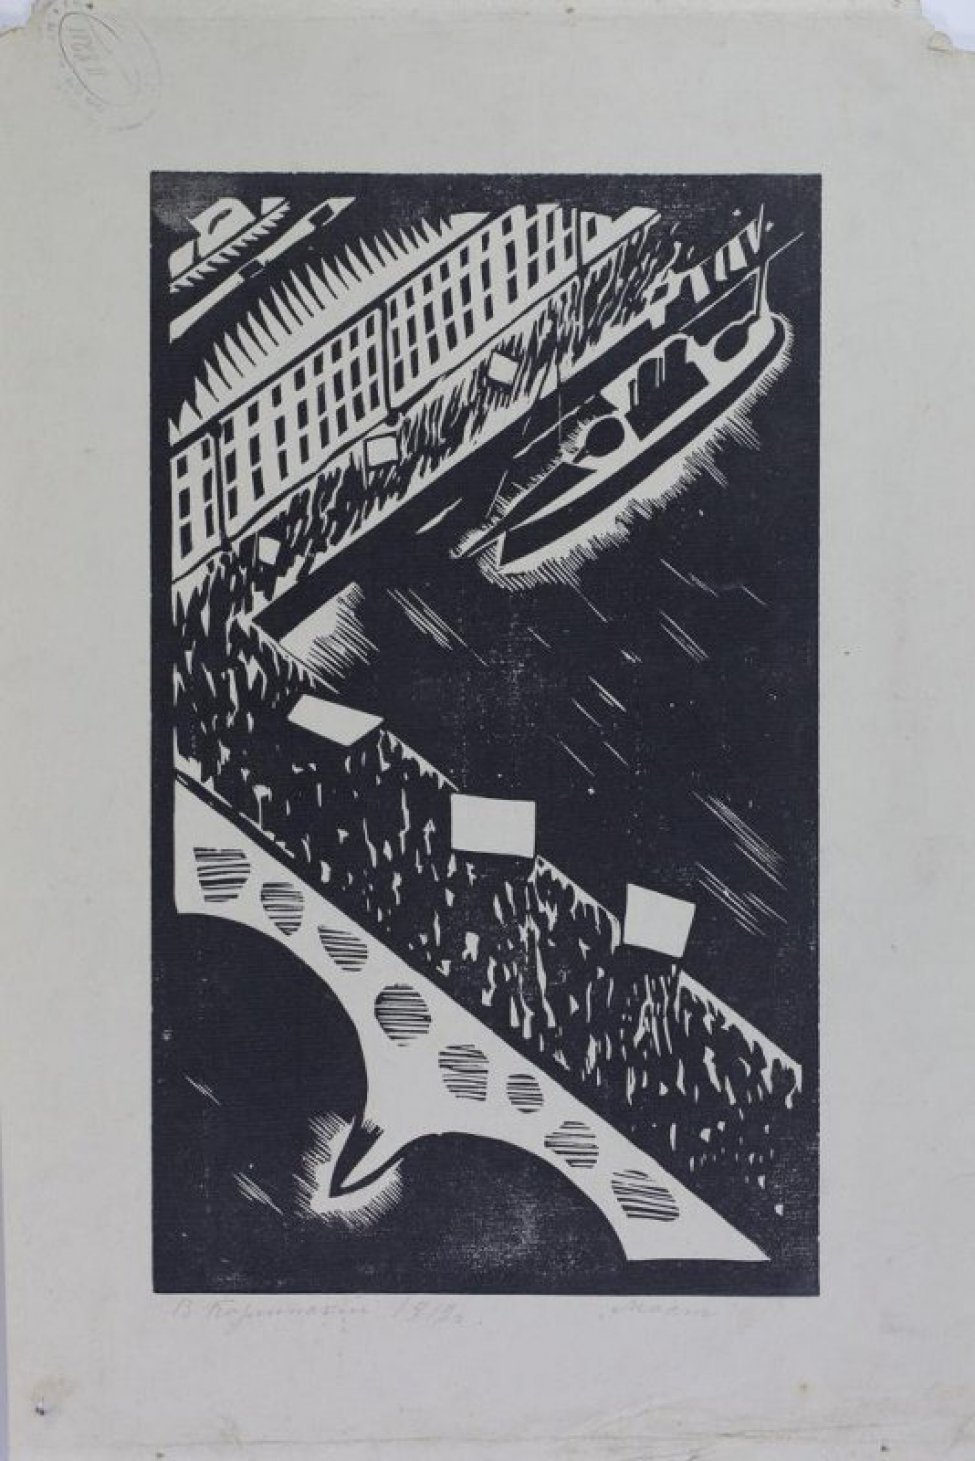 Изображена набережная и мост через реку. По набережной и мосту двигается многочисленная манифестация со знаменами. Под гравюрой слева подпись карандашом:"В. Козьминский 1919 г.", справа внизу подпись:"Мост".